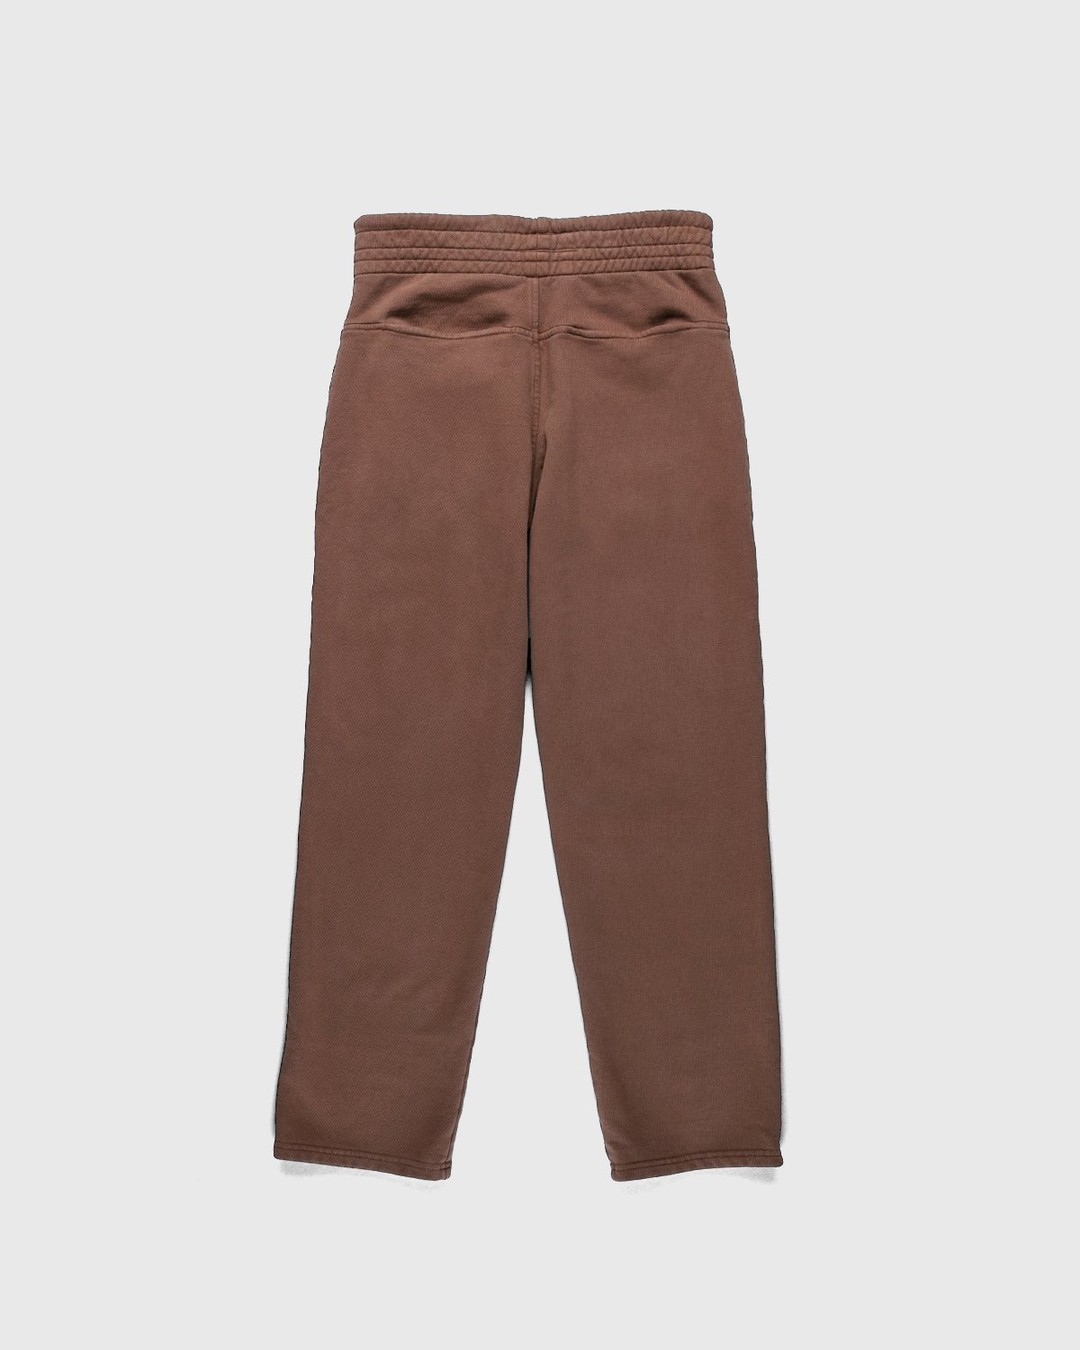 Darryl Brown – Gym Pants Coyote Brown - Pants - Brown - Image 2